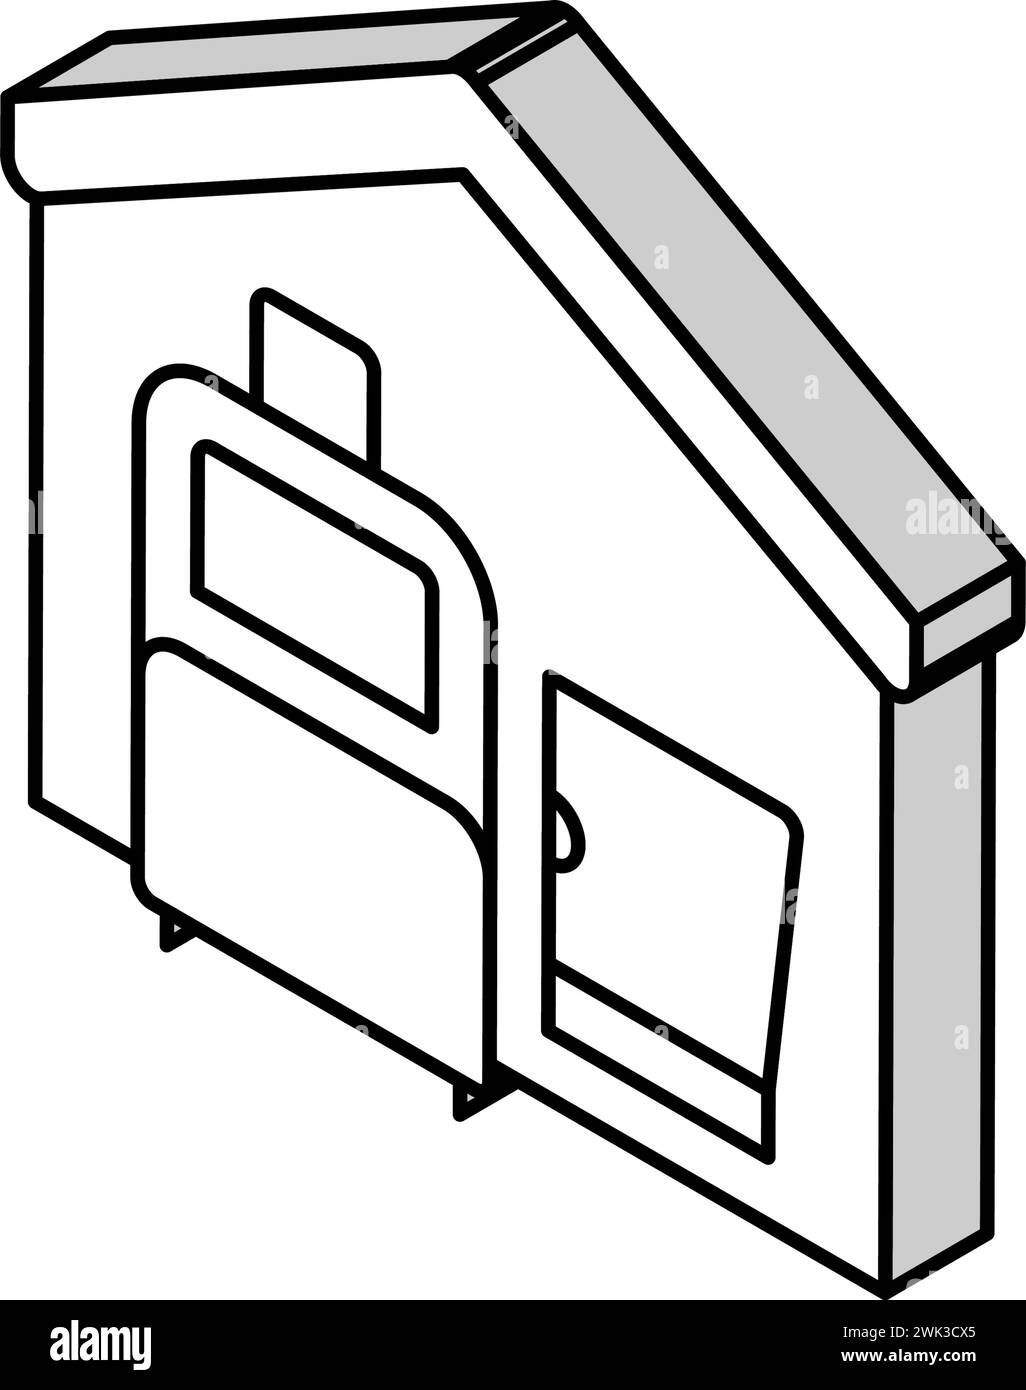 bagages et ordinateur portable dans l'illustration vectorielle d'icône isométrique de la maison Illustration de Vecteur